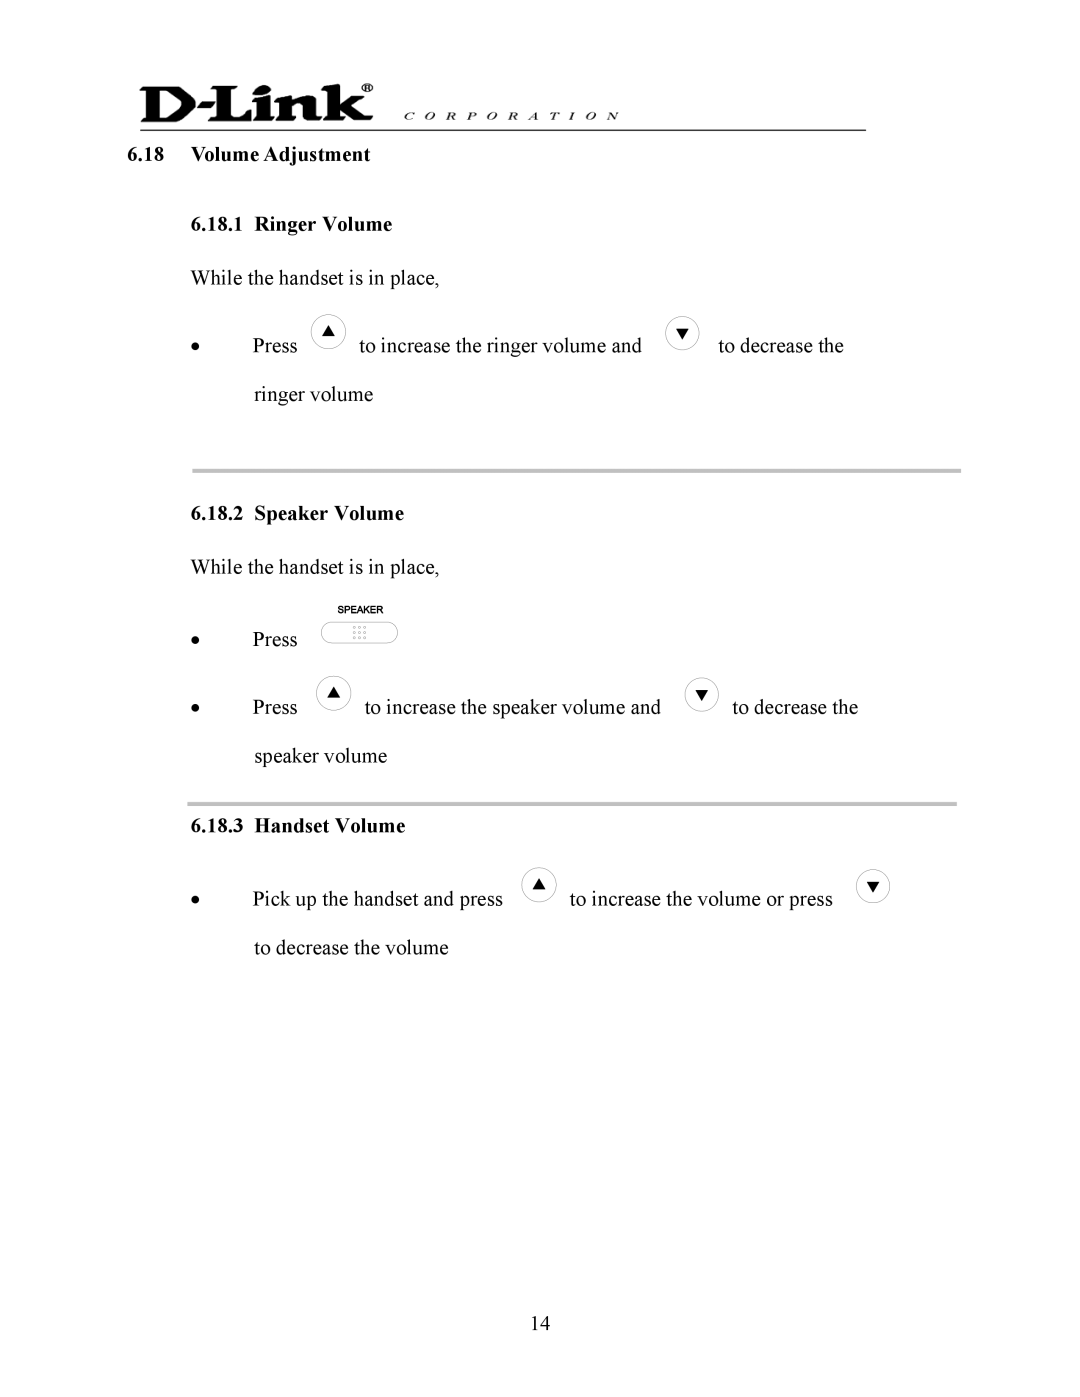 D-Link DPH-140S manual Volume Adjustment Ringer Volume, Speaker Volume, Handset Volume 